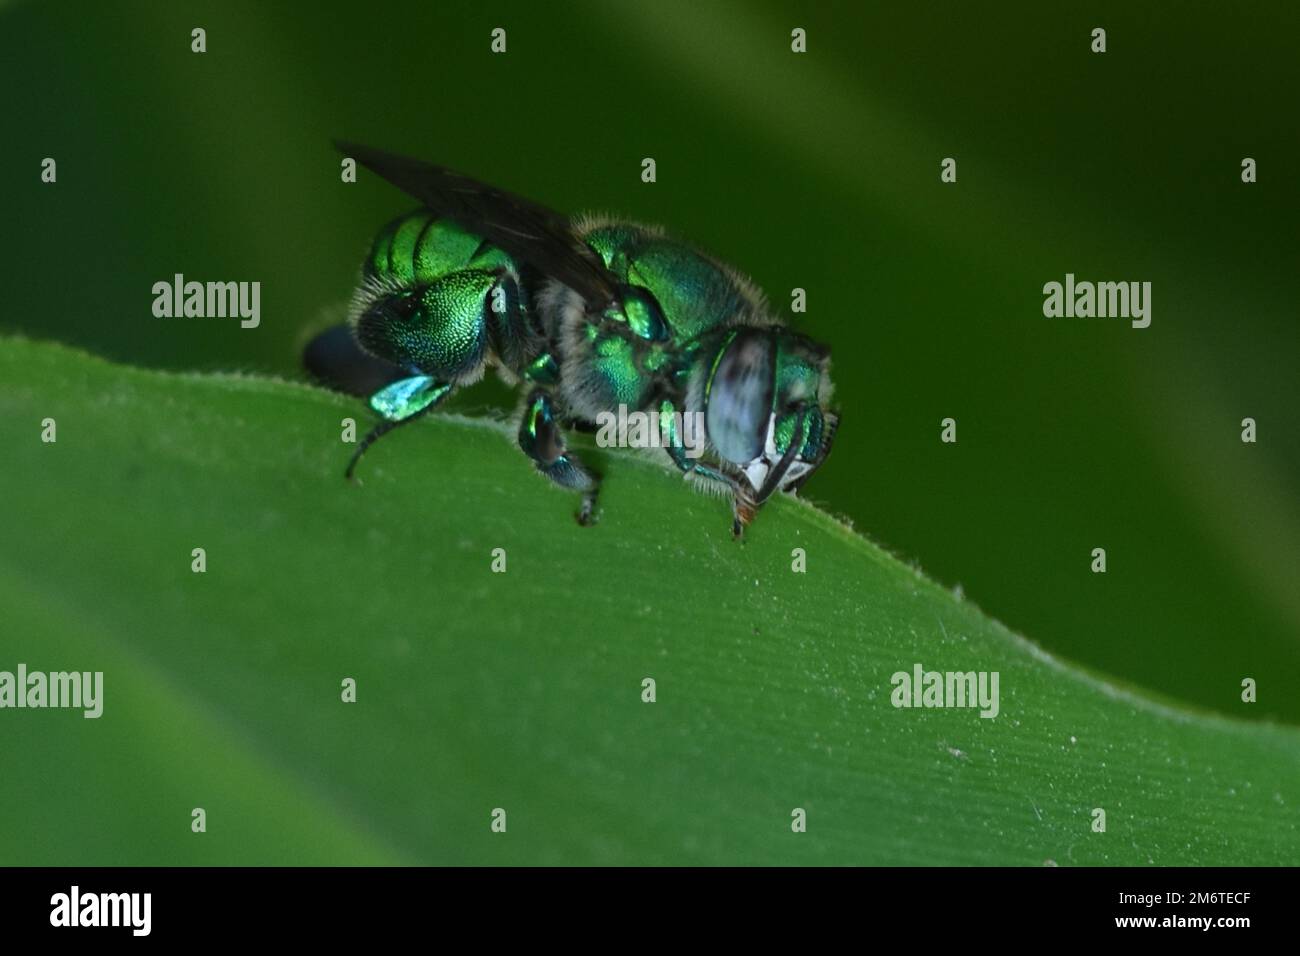 Ein grüner Lackmuskäfer, der auf einer Pflanze/Eyepix-Gruppe steht (Kreditbild: © Carlos Tischler/Eyepix via ZUMA Press Wire) Stockfoto